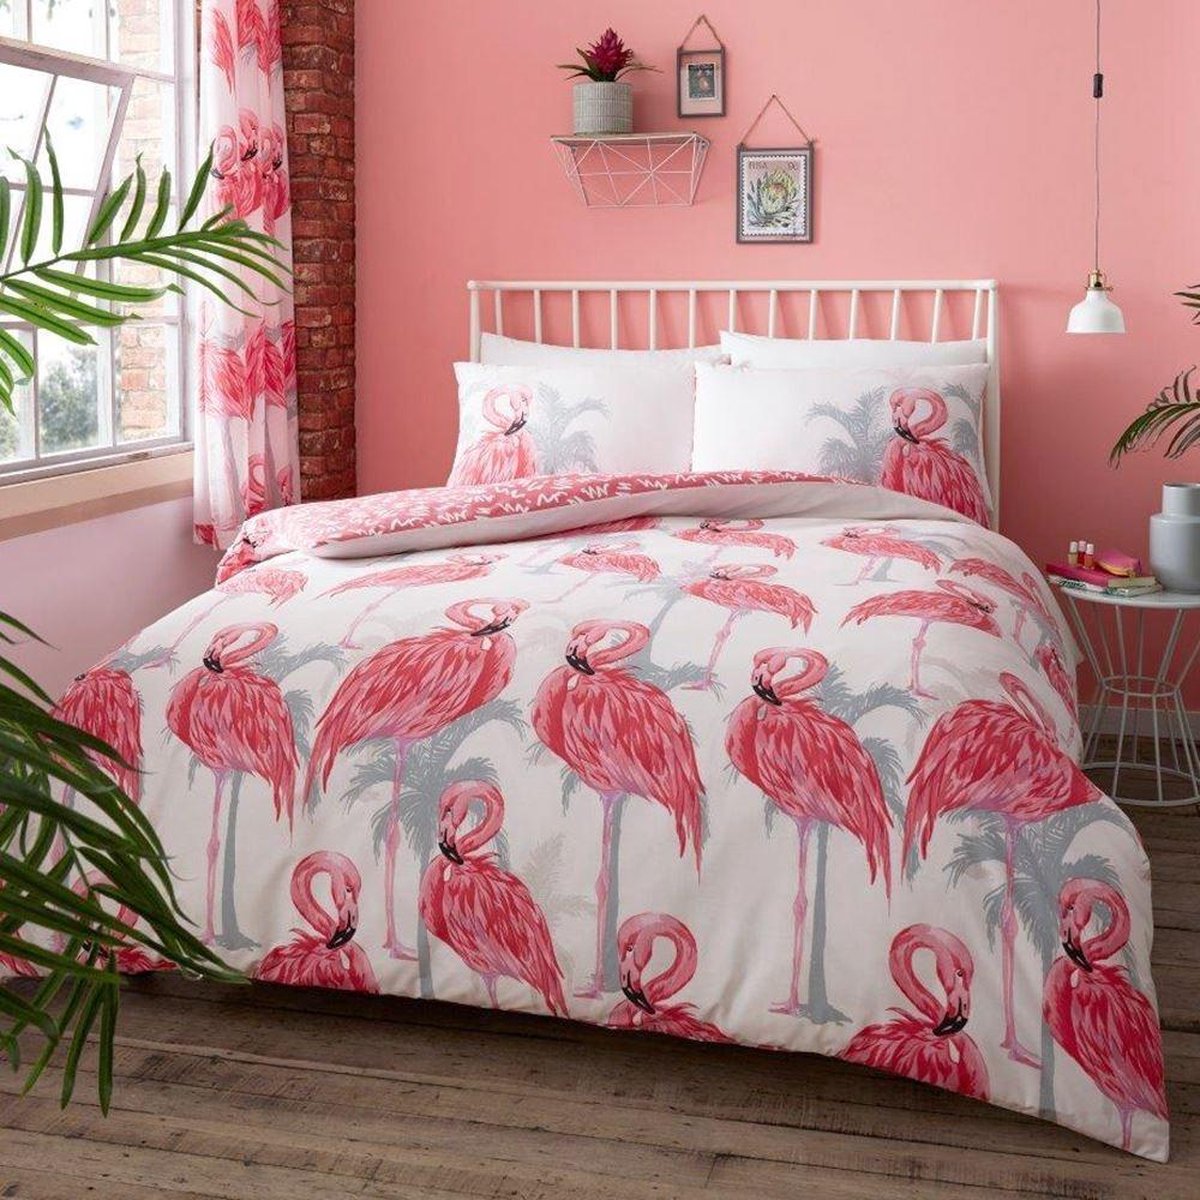 Flamingo dekbedovertrek - eenpersoons - Flamingo's dekbed bol.com